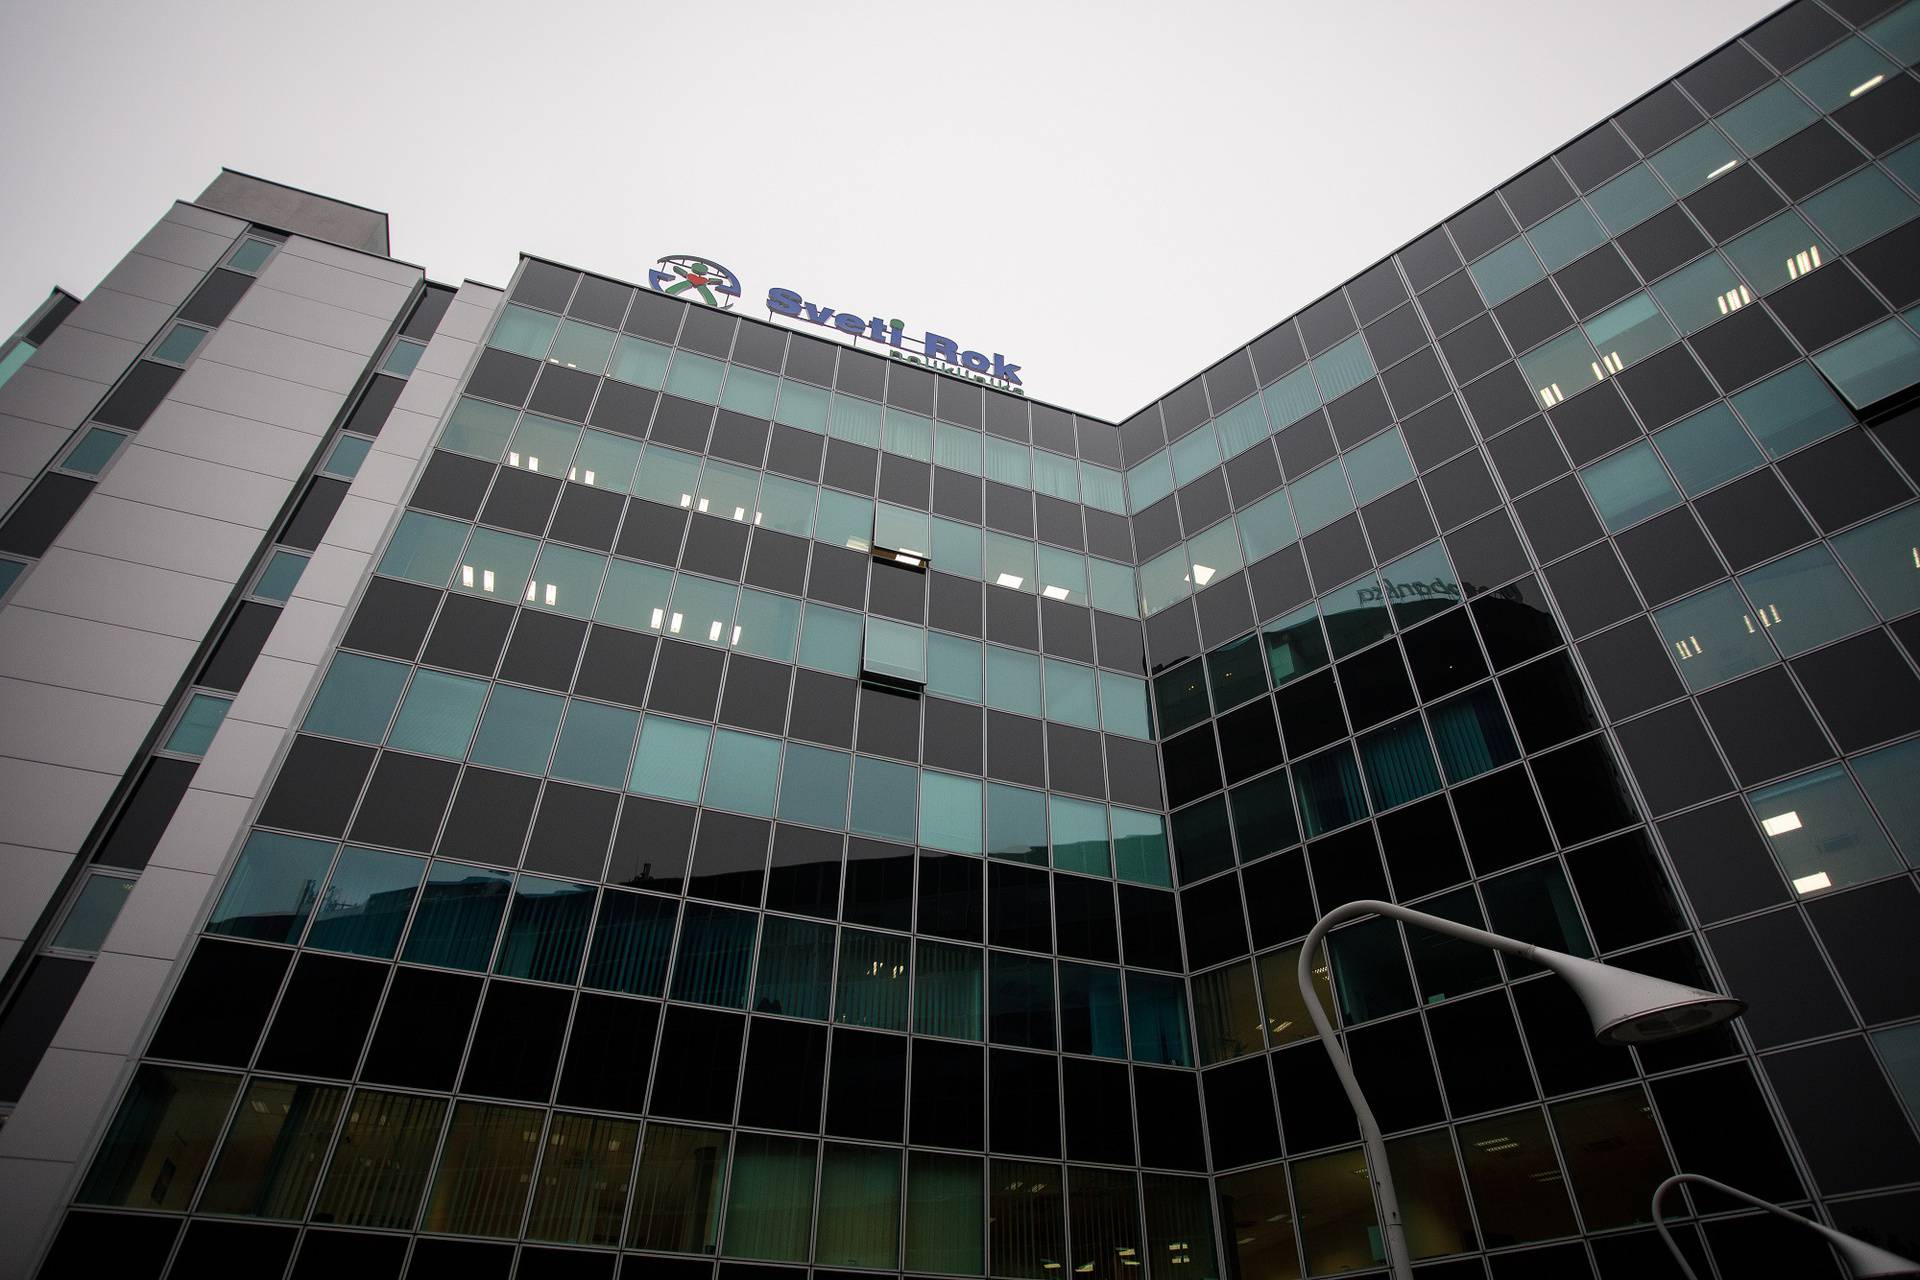 Poliklinika Sveti Rok postaje dio najvećeg europskog pružatelja medicinske usluge Affidea Grupe